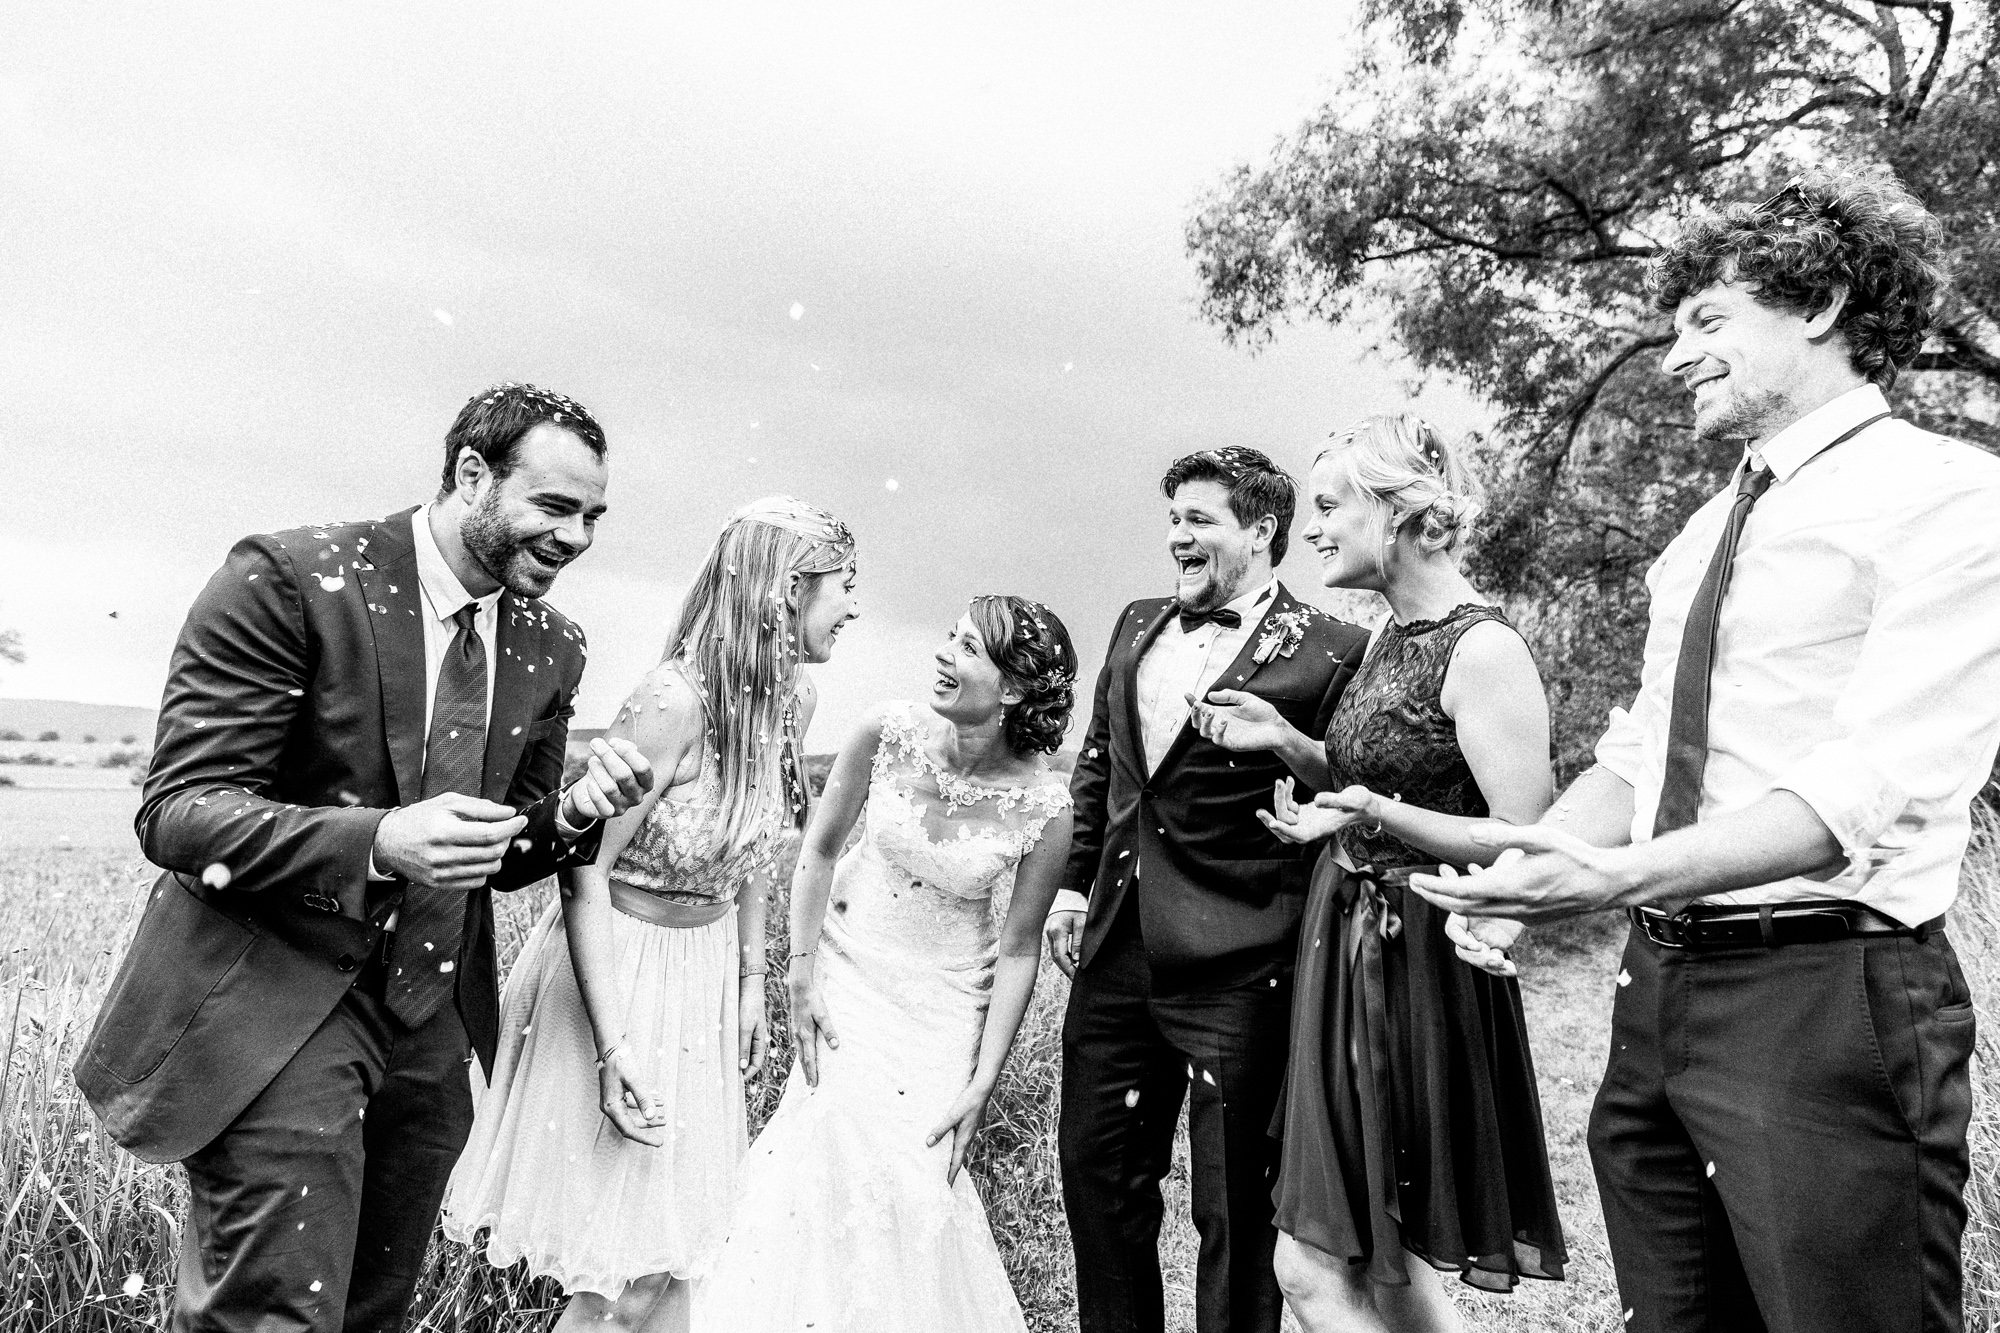 Svenja und ben hochzeitsfotos hochzeitsfotograf wedding photographer göttingen 